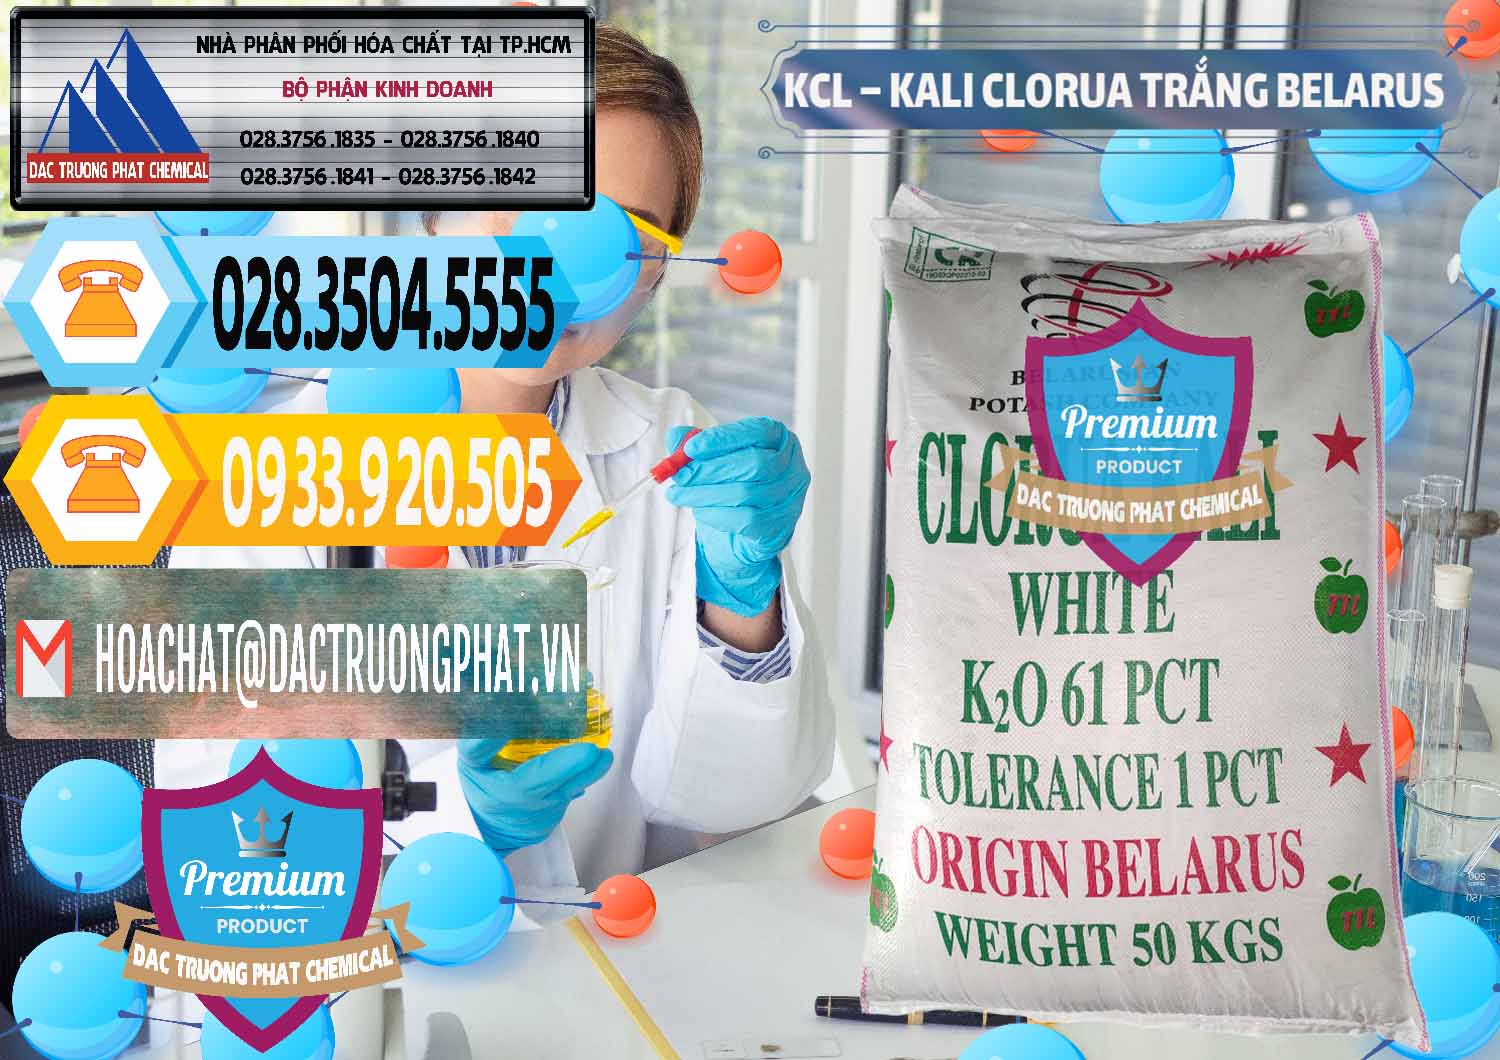 Đơn vị chuyên cung ứng _ bán KCL – Kali Clorua Trắng Belarus - 0085 - Chuyên bán _ phân phối hóa chất tại TP.HCM - hoachattayrua.net